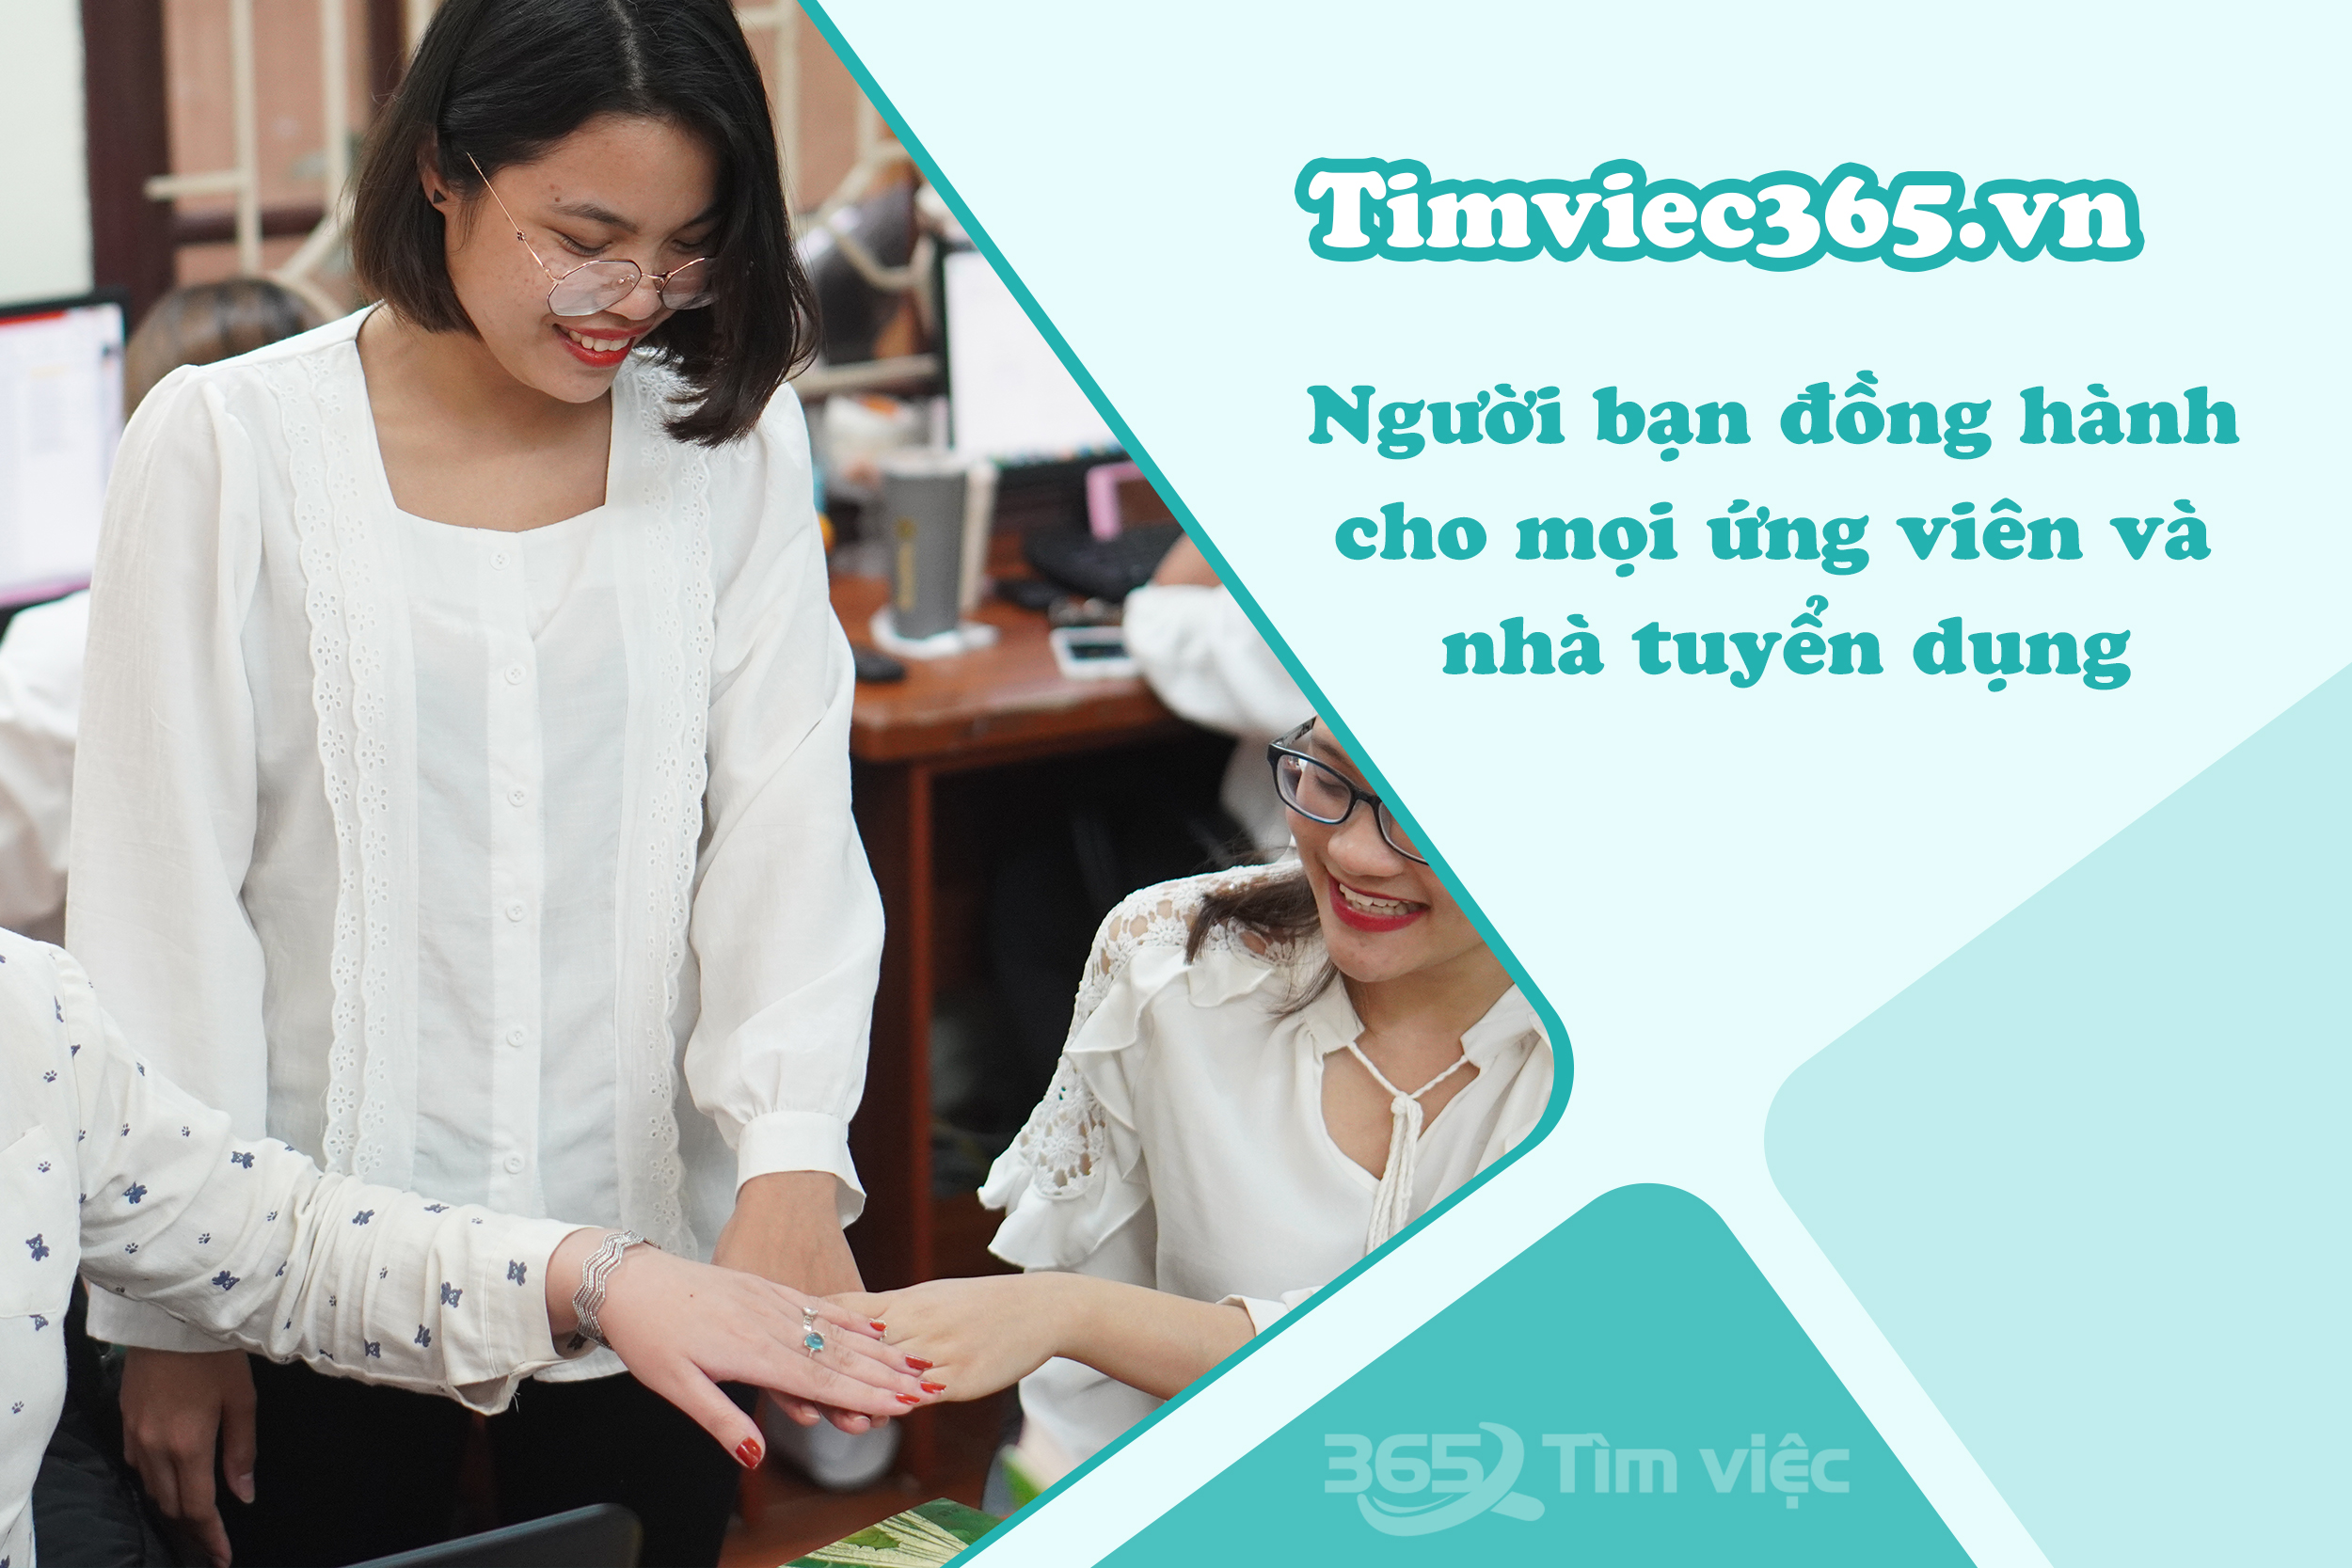 Timviec365.vn - cầu nối đưa bạn tiến nhanh hơn trong hành trình tìm việc Khách sạn - Nhà hàng tại Tuyên Quang 